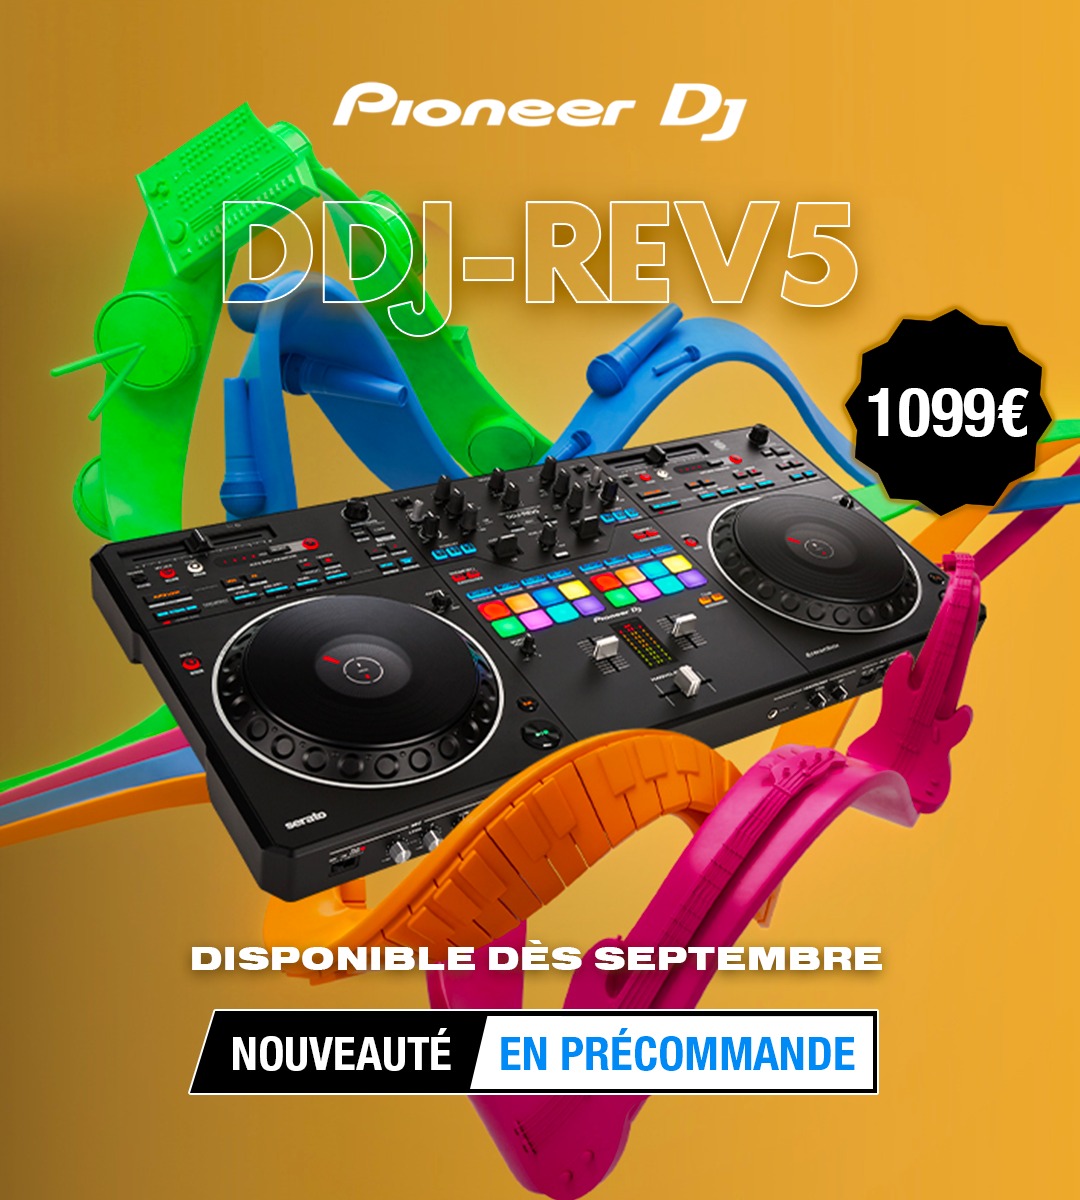 Pioneer DJ DDJ-REV5, contrôleur DJ avec scratch authentique et fonctions innovantes : guide d'achat, avis, test, prix et comparatif